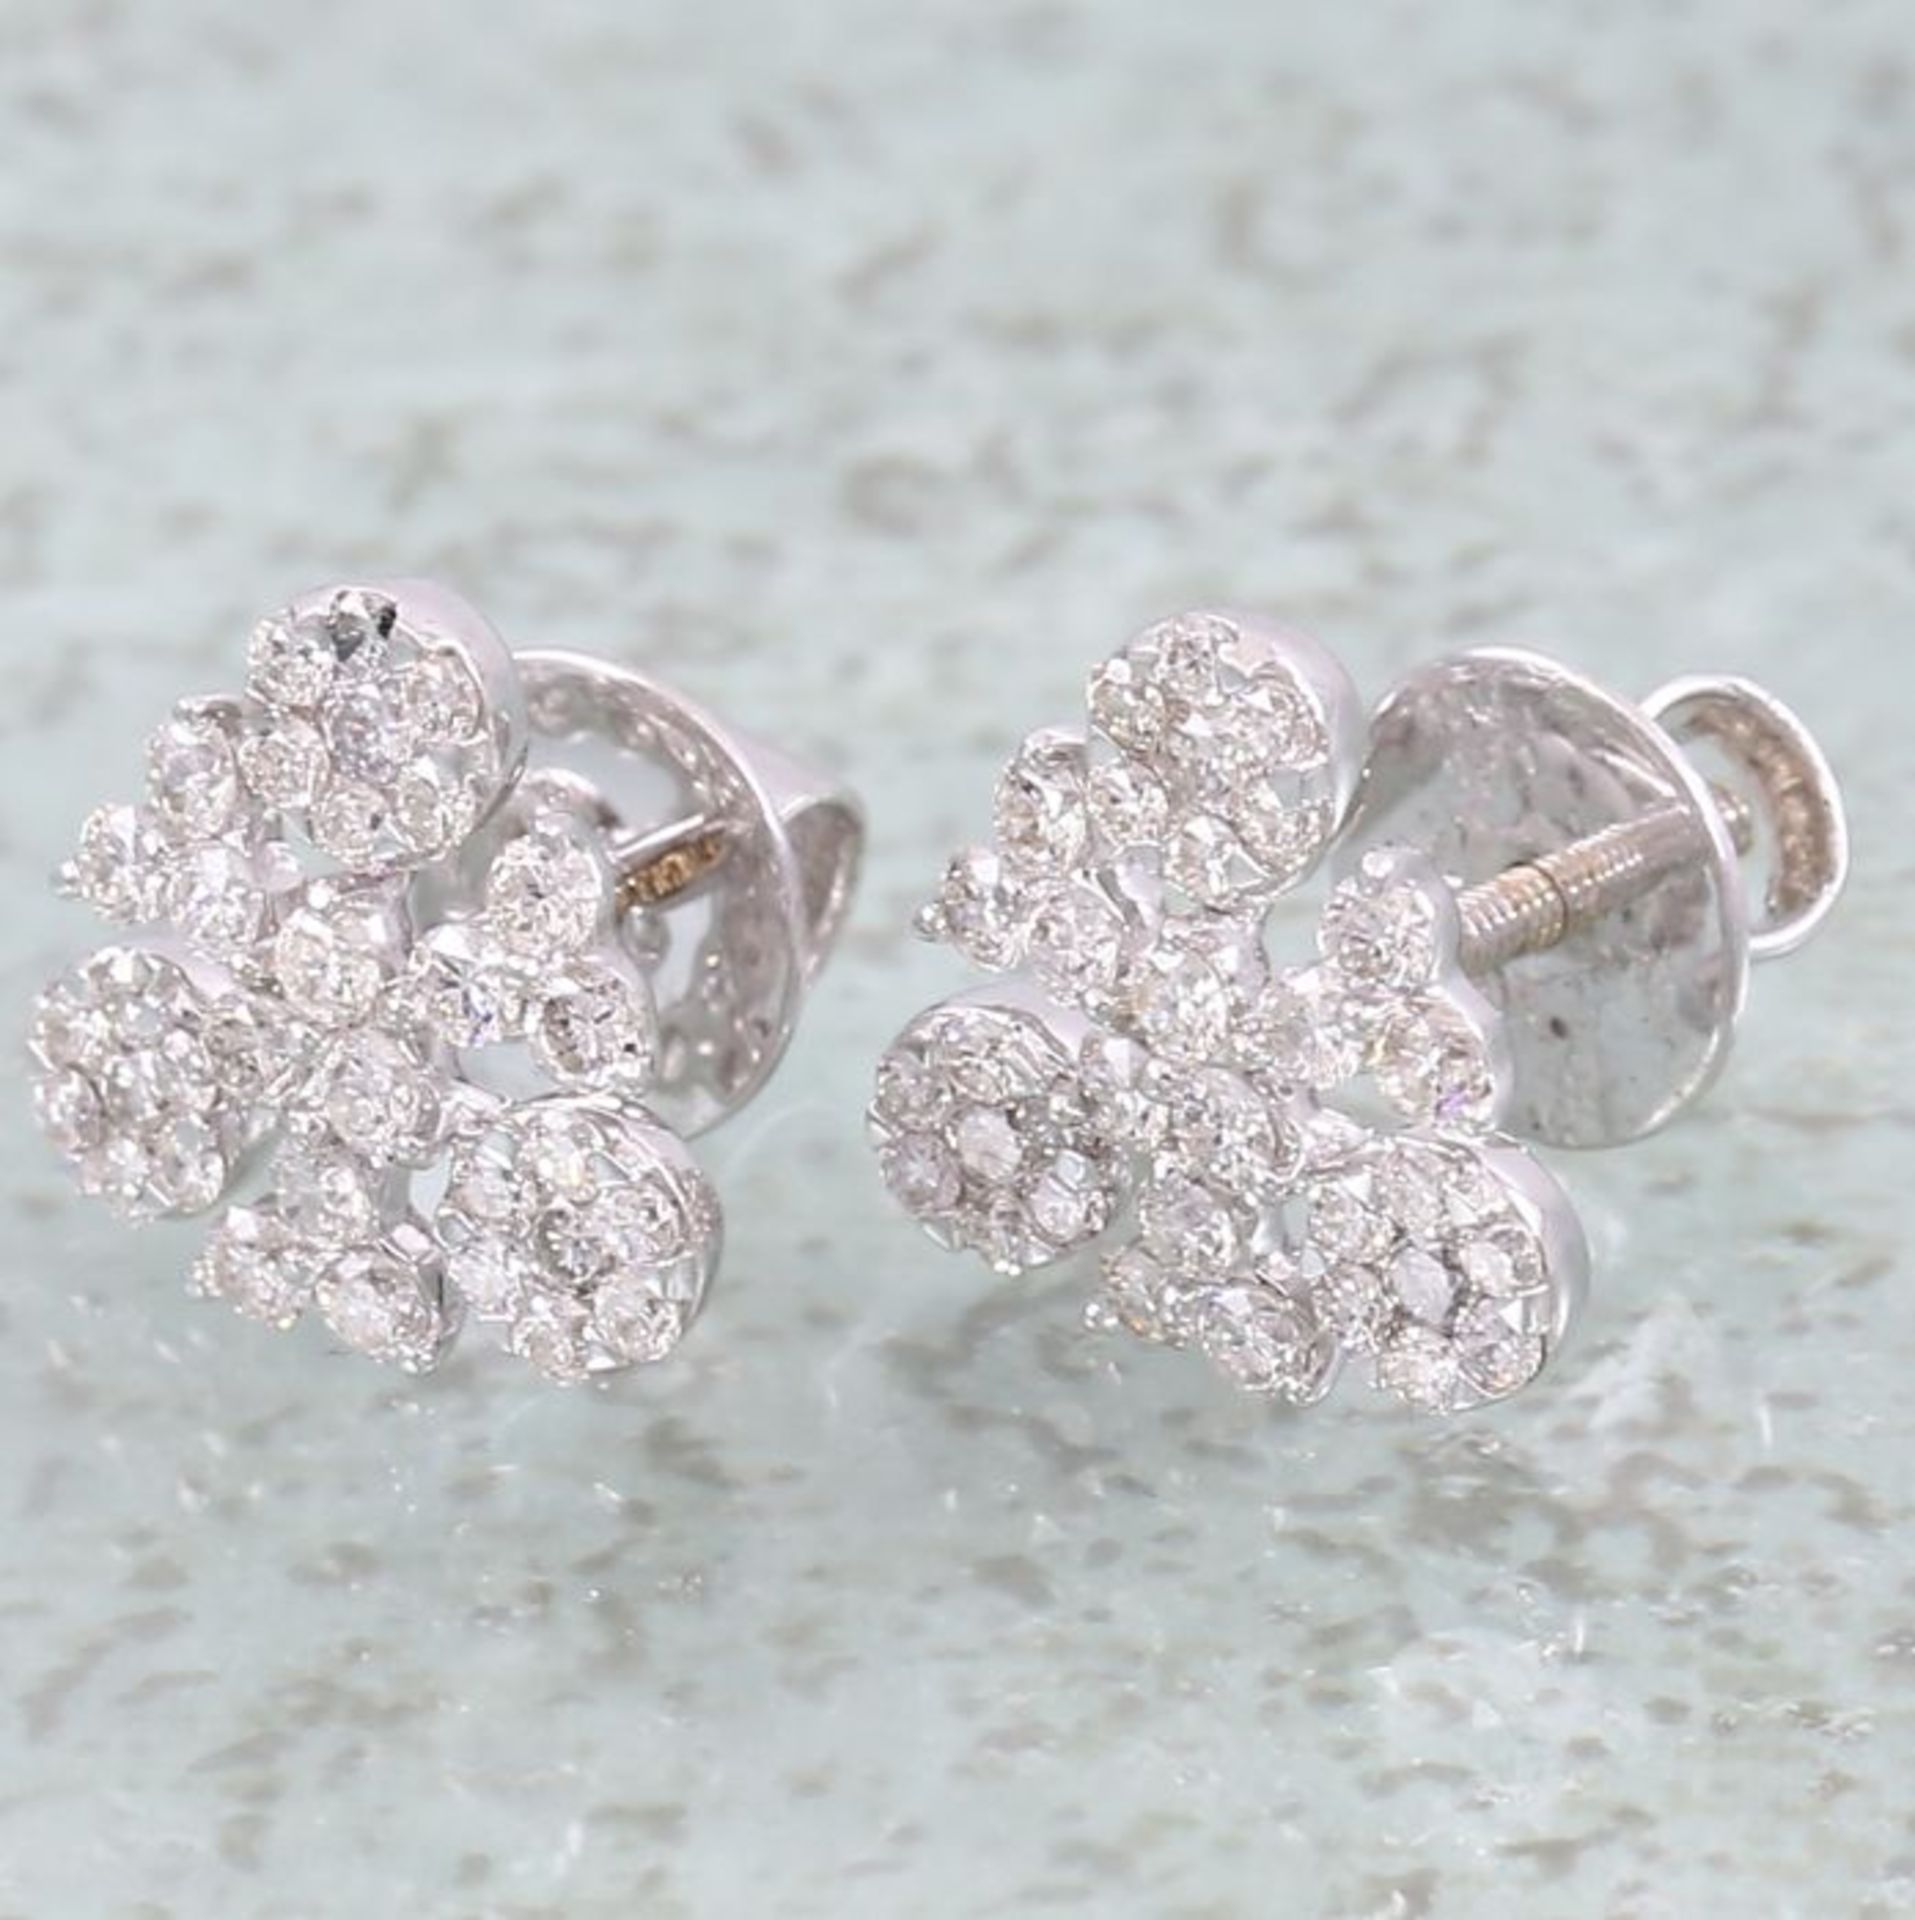 IGI Certified 18 K / 750 White Gold Diamond Earrings - Image 6 of 7